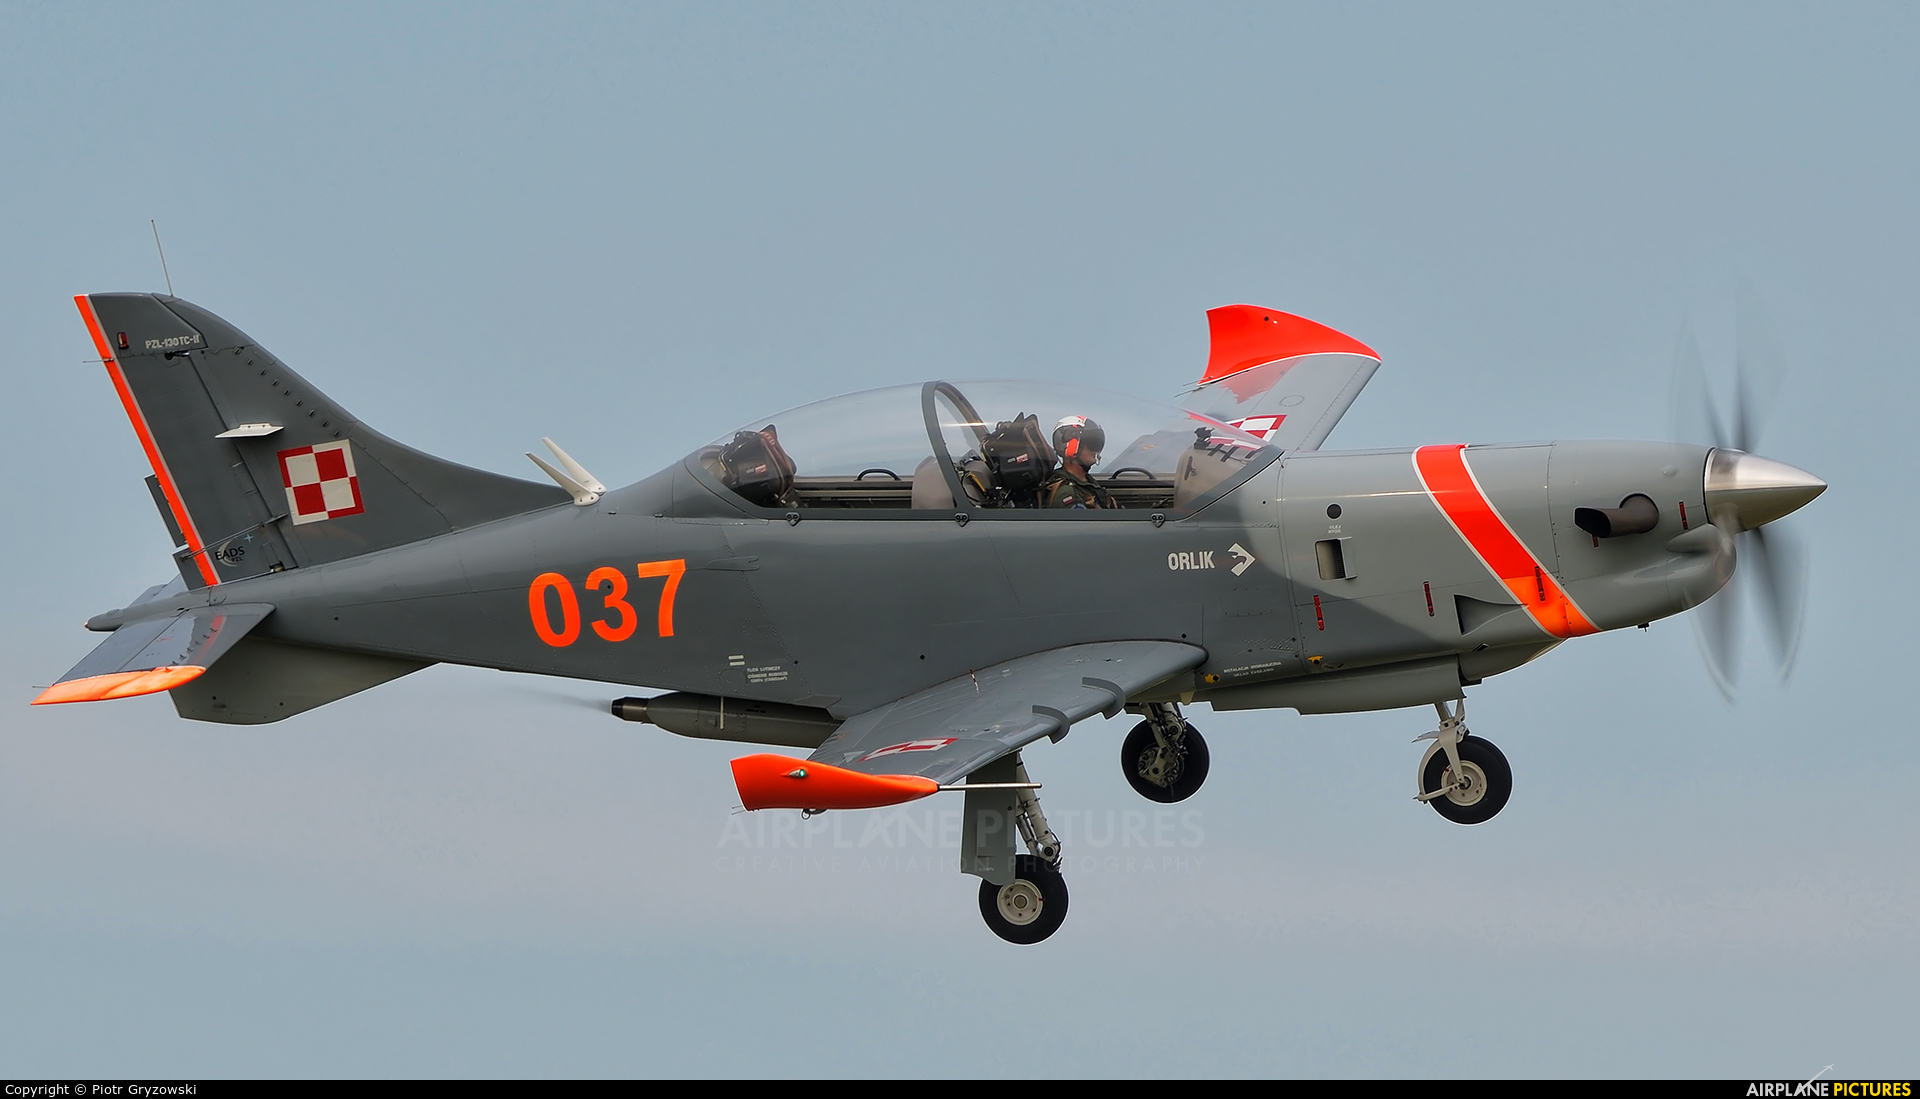 Poland - Air Force "Orlik Acrobatic Group" 037 aircraft at Varazdin